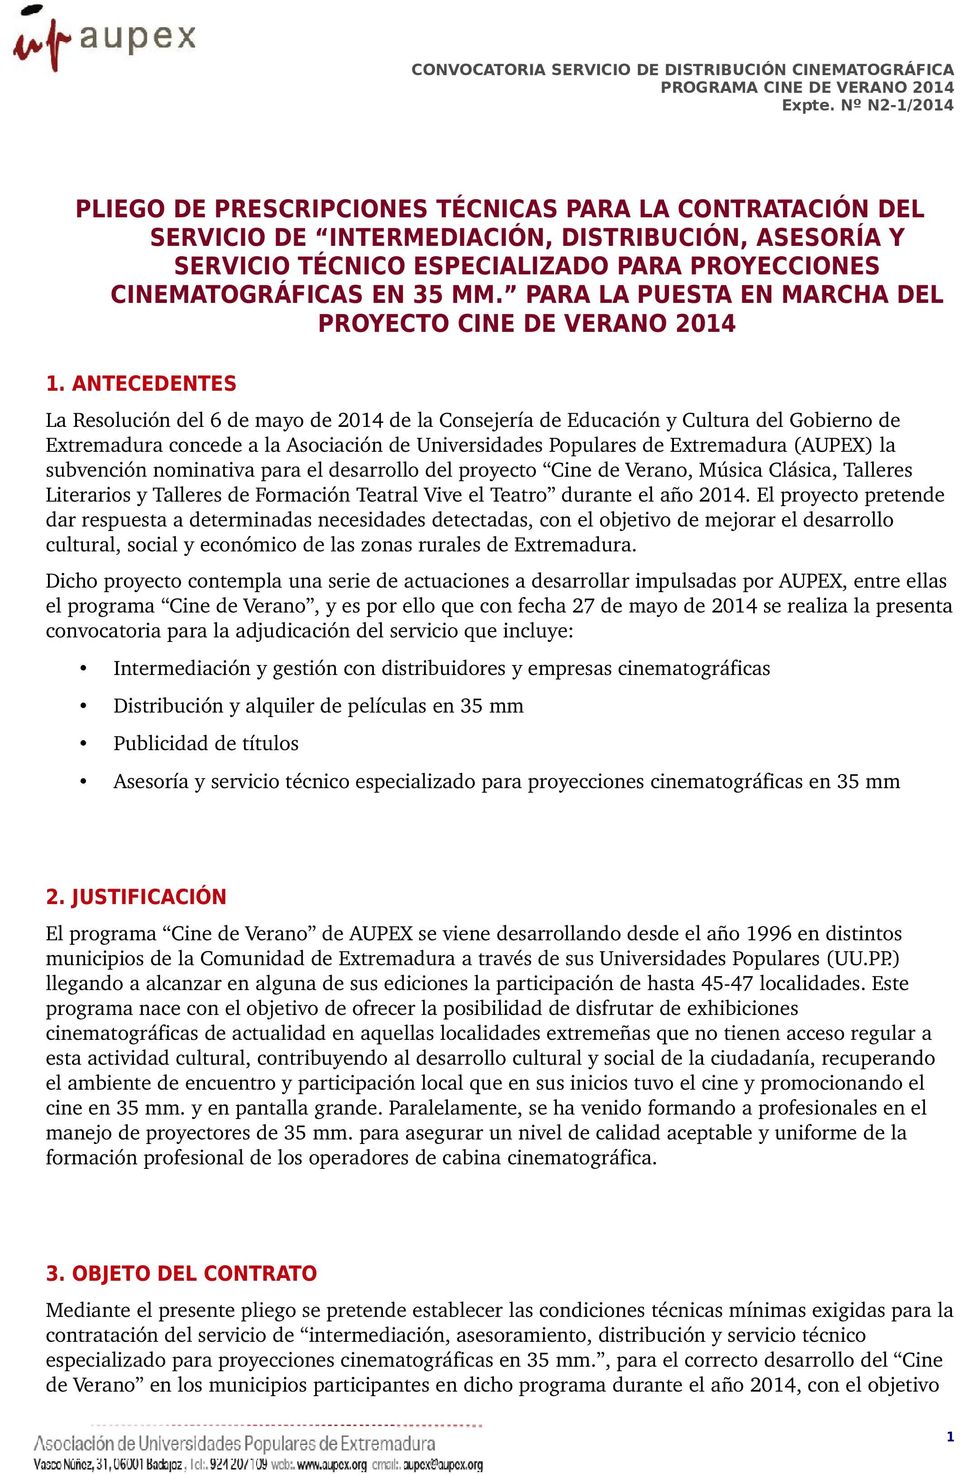 ANTECEDENTES La Resolución del 6 de mayo de 2014 de la Consejería de Educación y Cultura del Gobierno de Extremadura concede a la Asociación de Universidades Populares de Extremadura (AUPEX) la